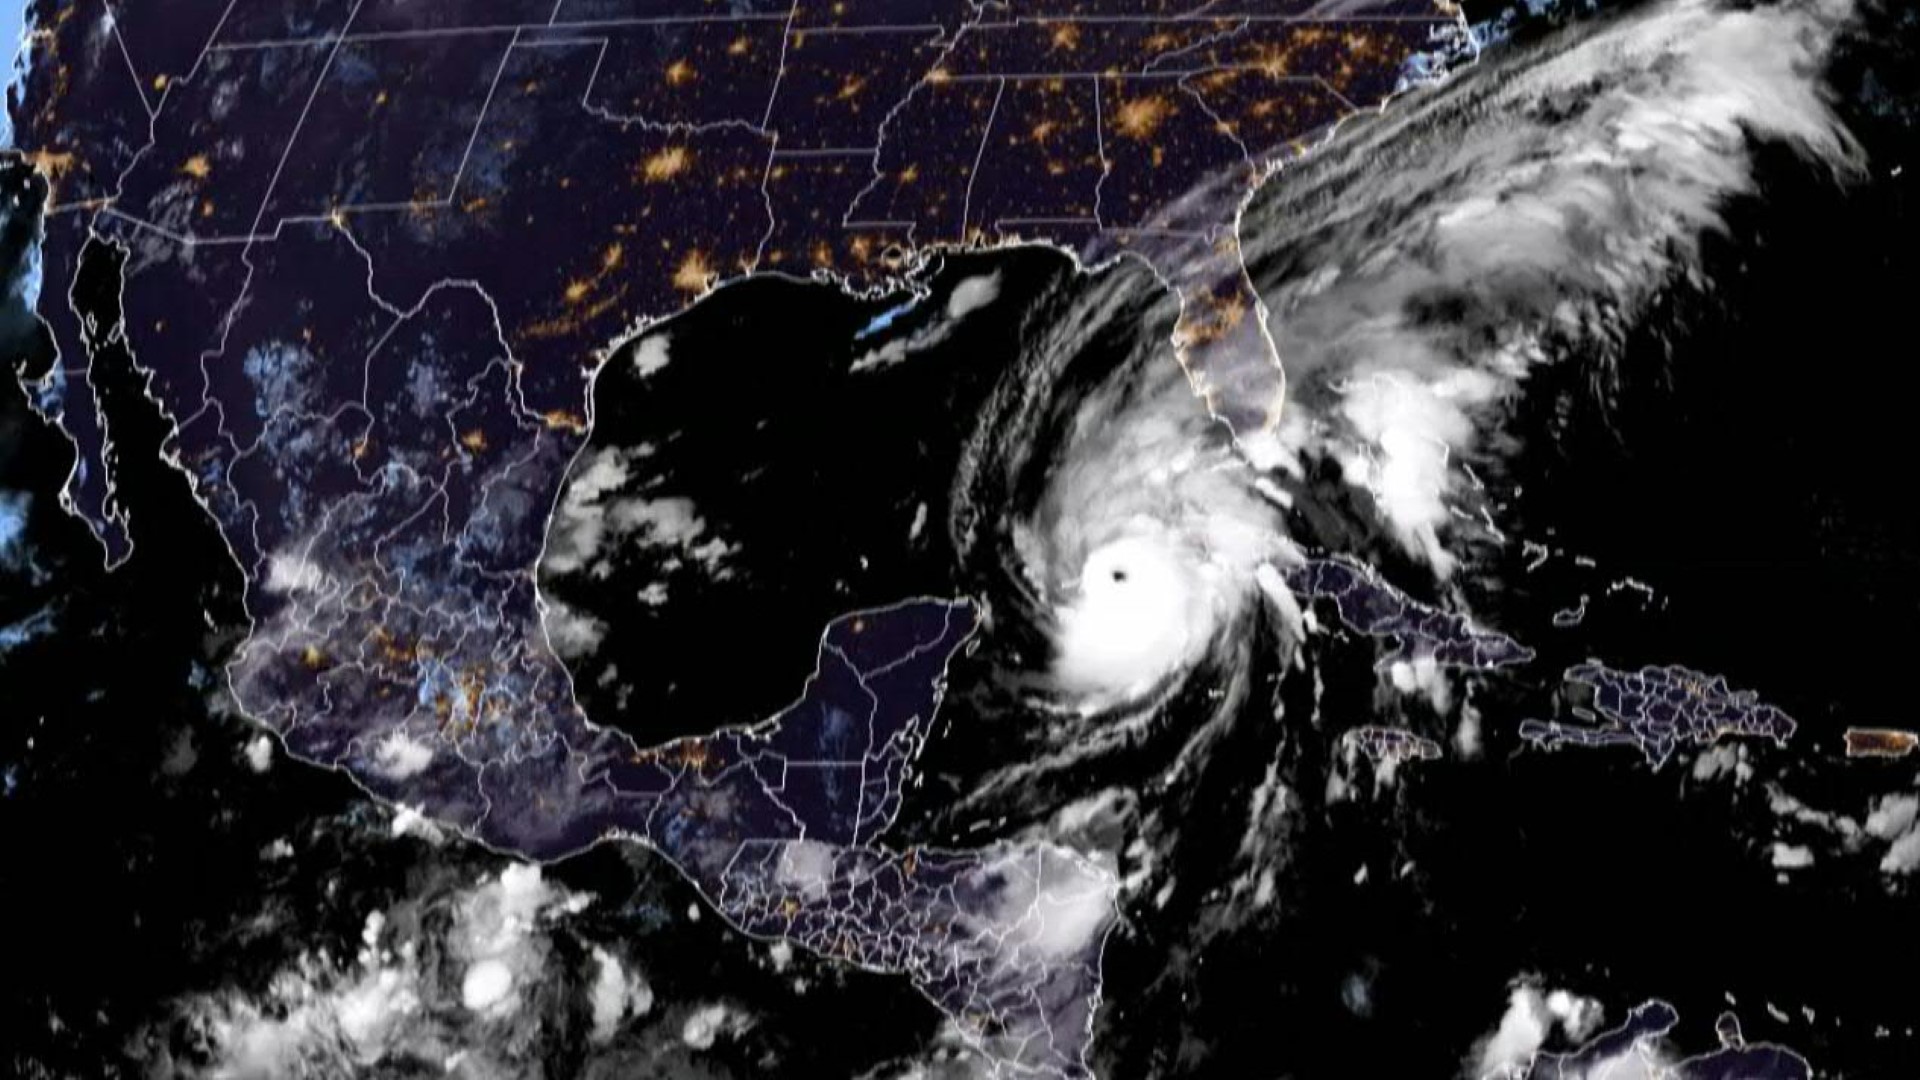 Temporada de huracanes 2023: ¿Cuándo inicia y cómo afectará?